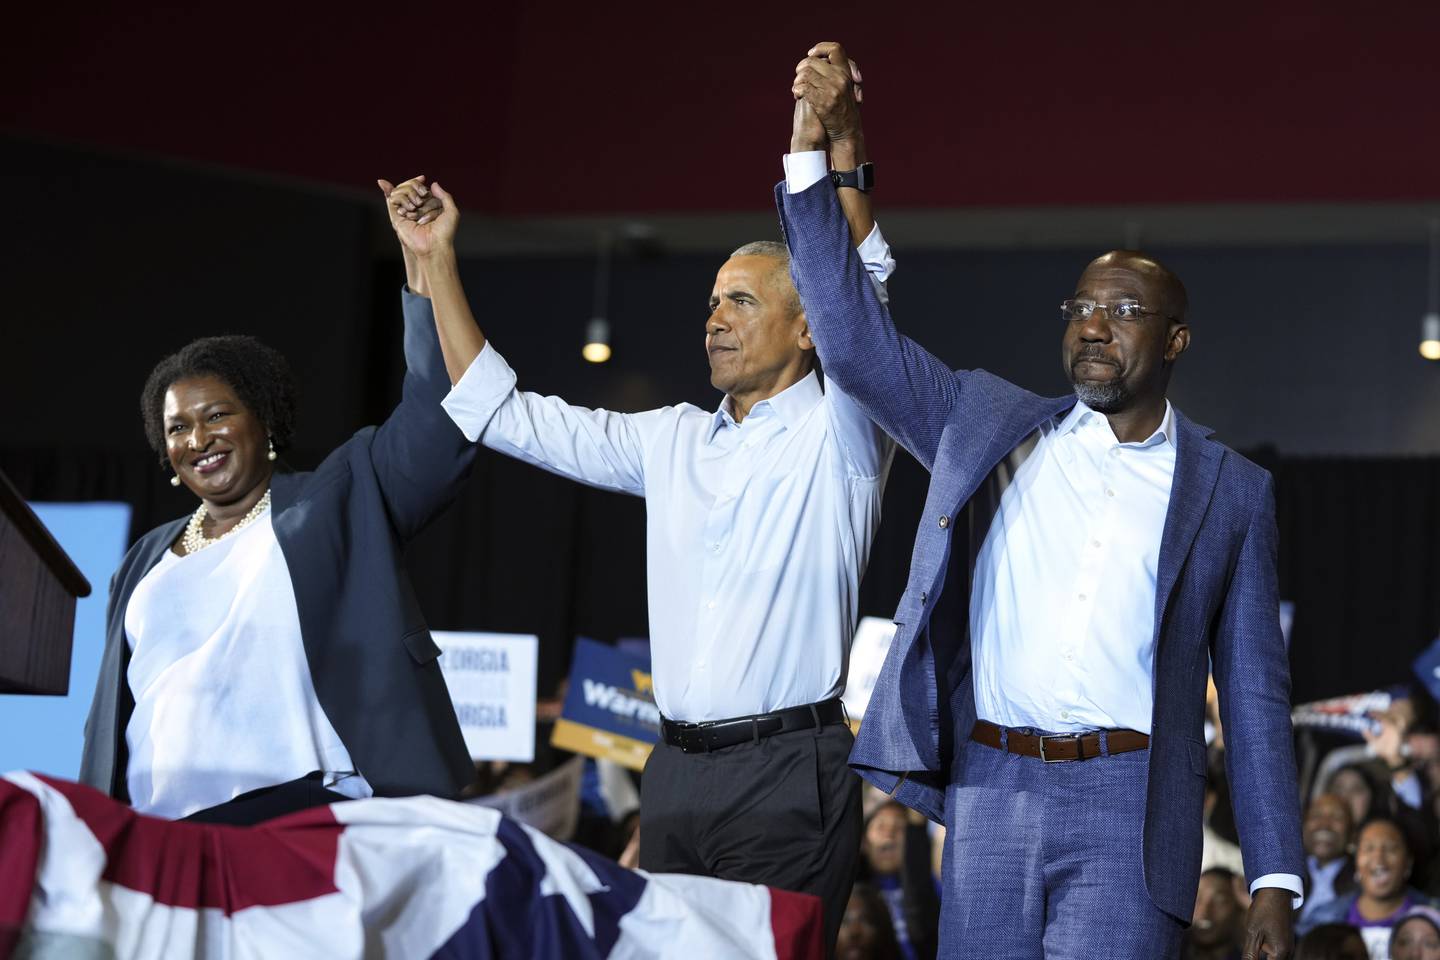 Ekspresident Barack Obama (midten) på valgkamparrangement i Georgia med Stacey Abrams, som stilte som guvernørkandidat, og Raphael Warnock, som vil sikre senatsplass.